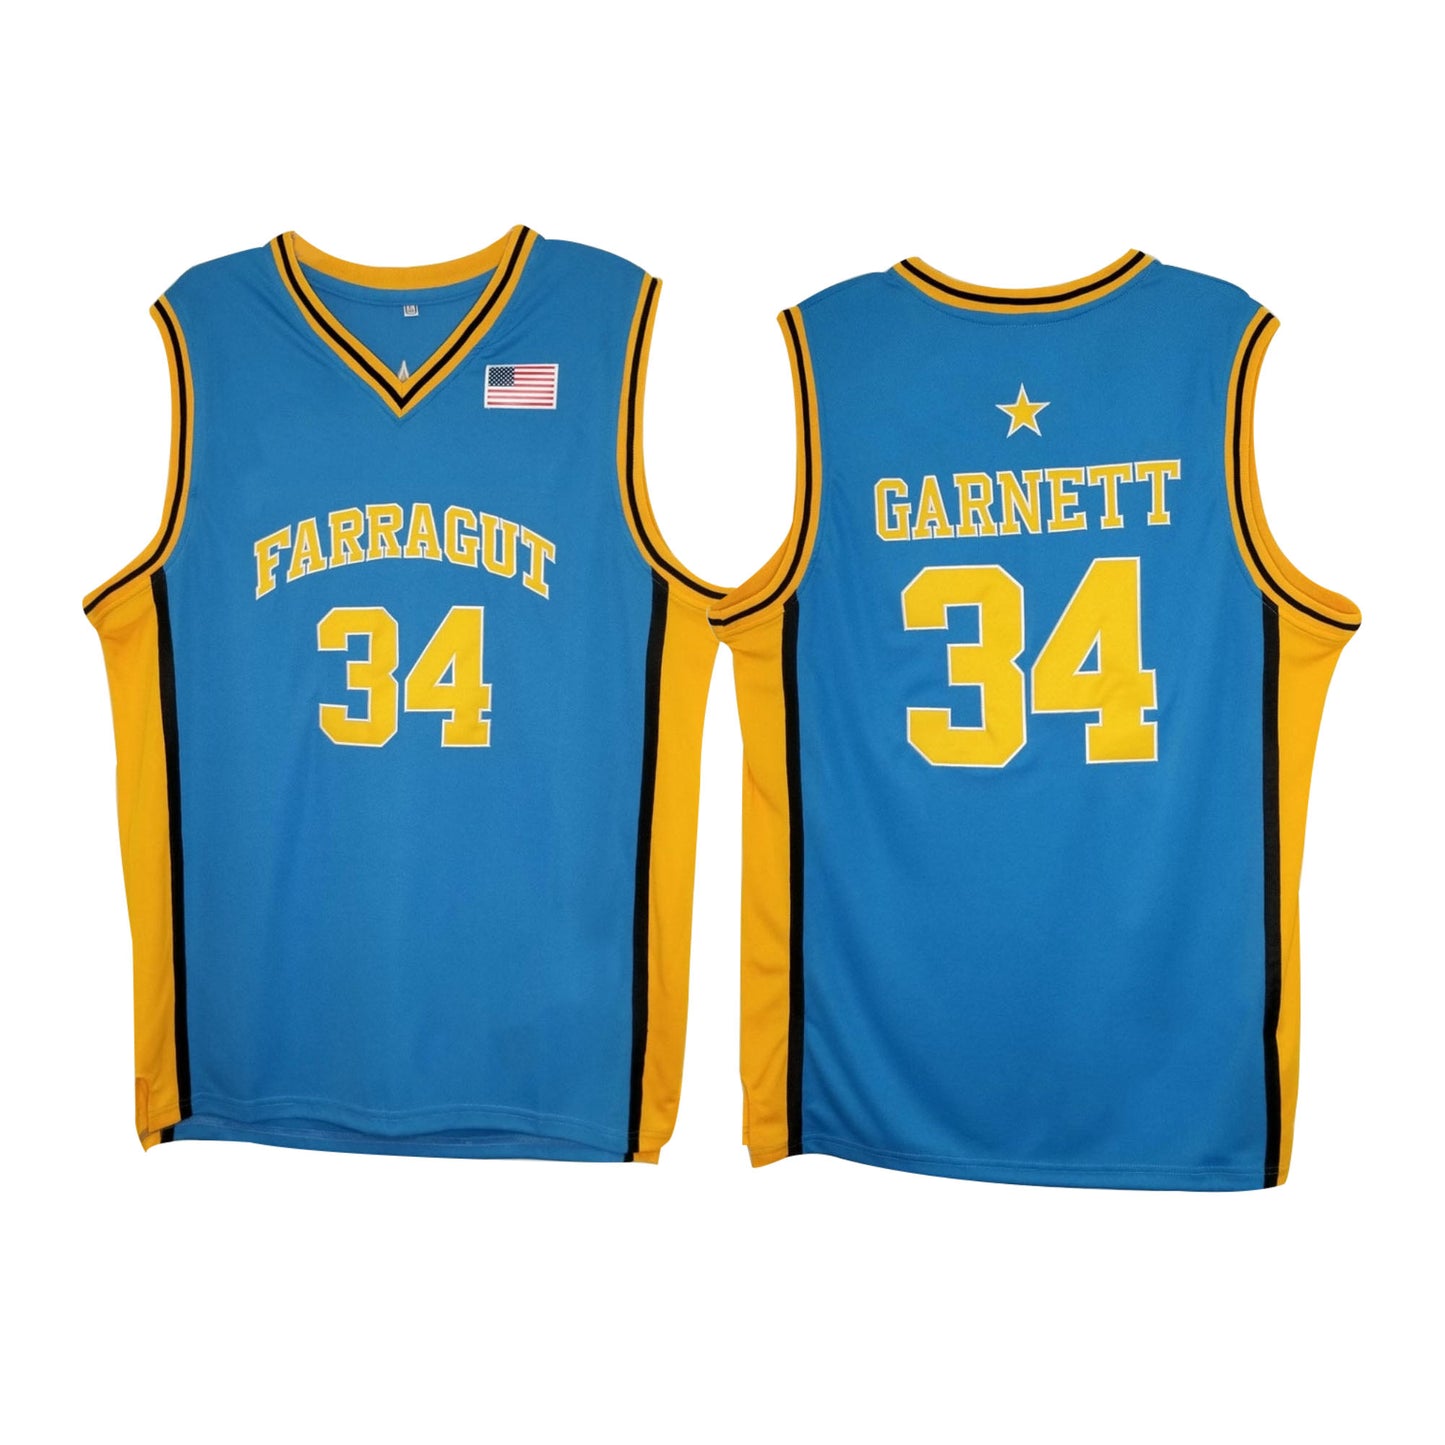 Kevin Garnett High School 34 Basketball Jersey